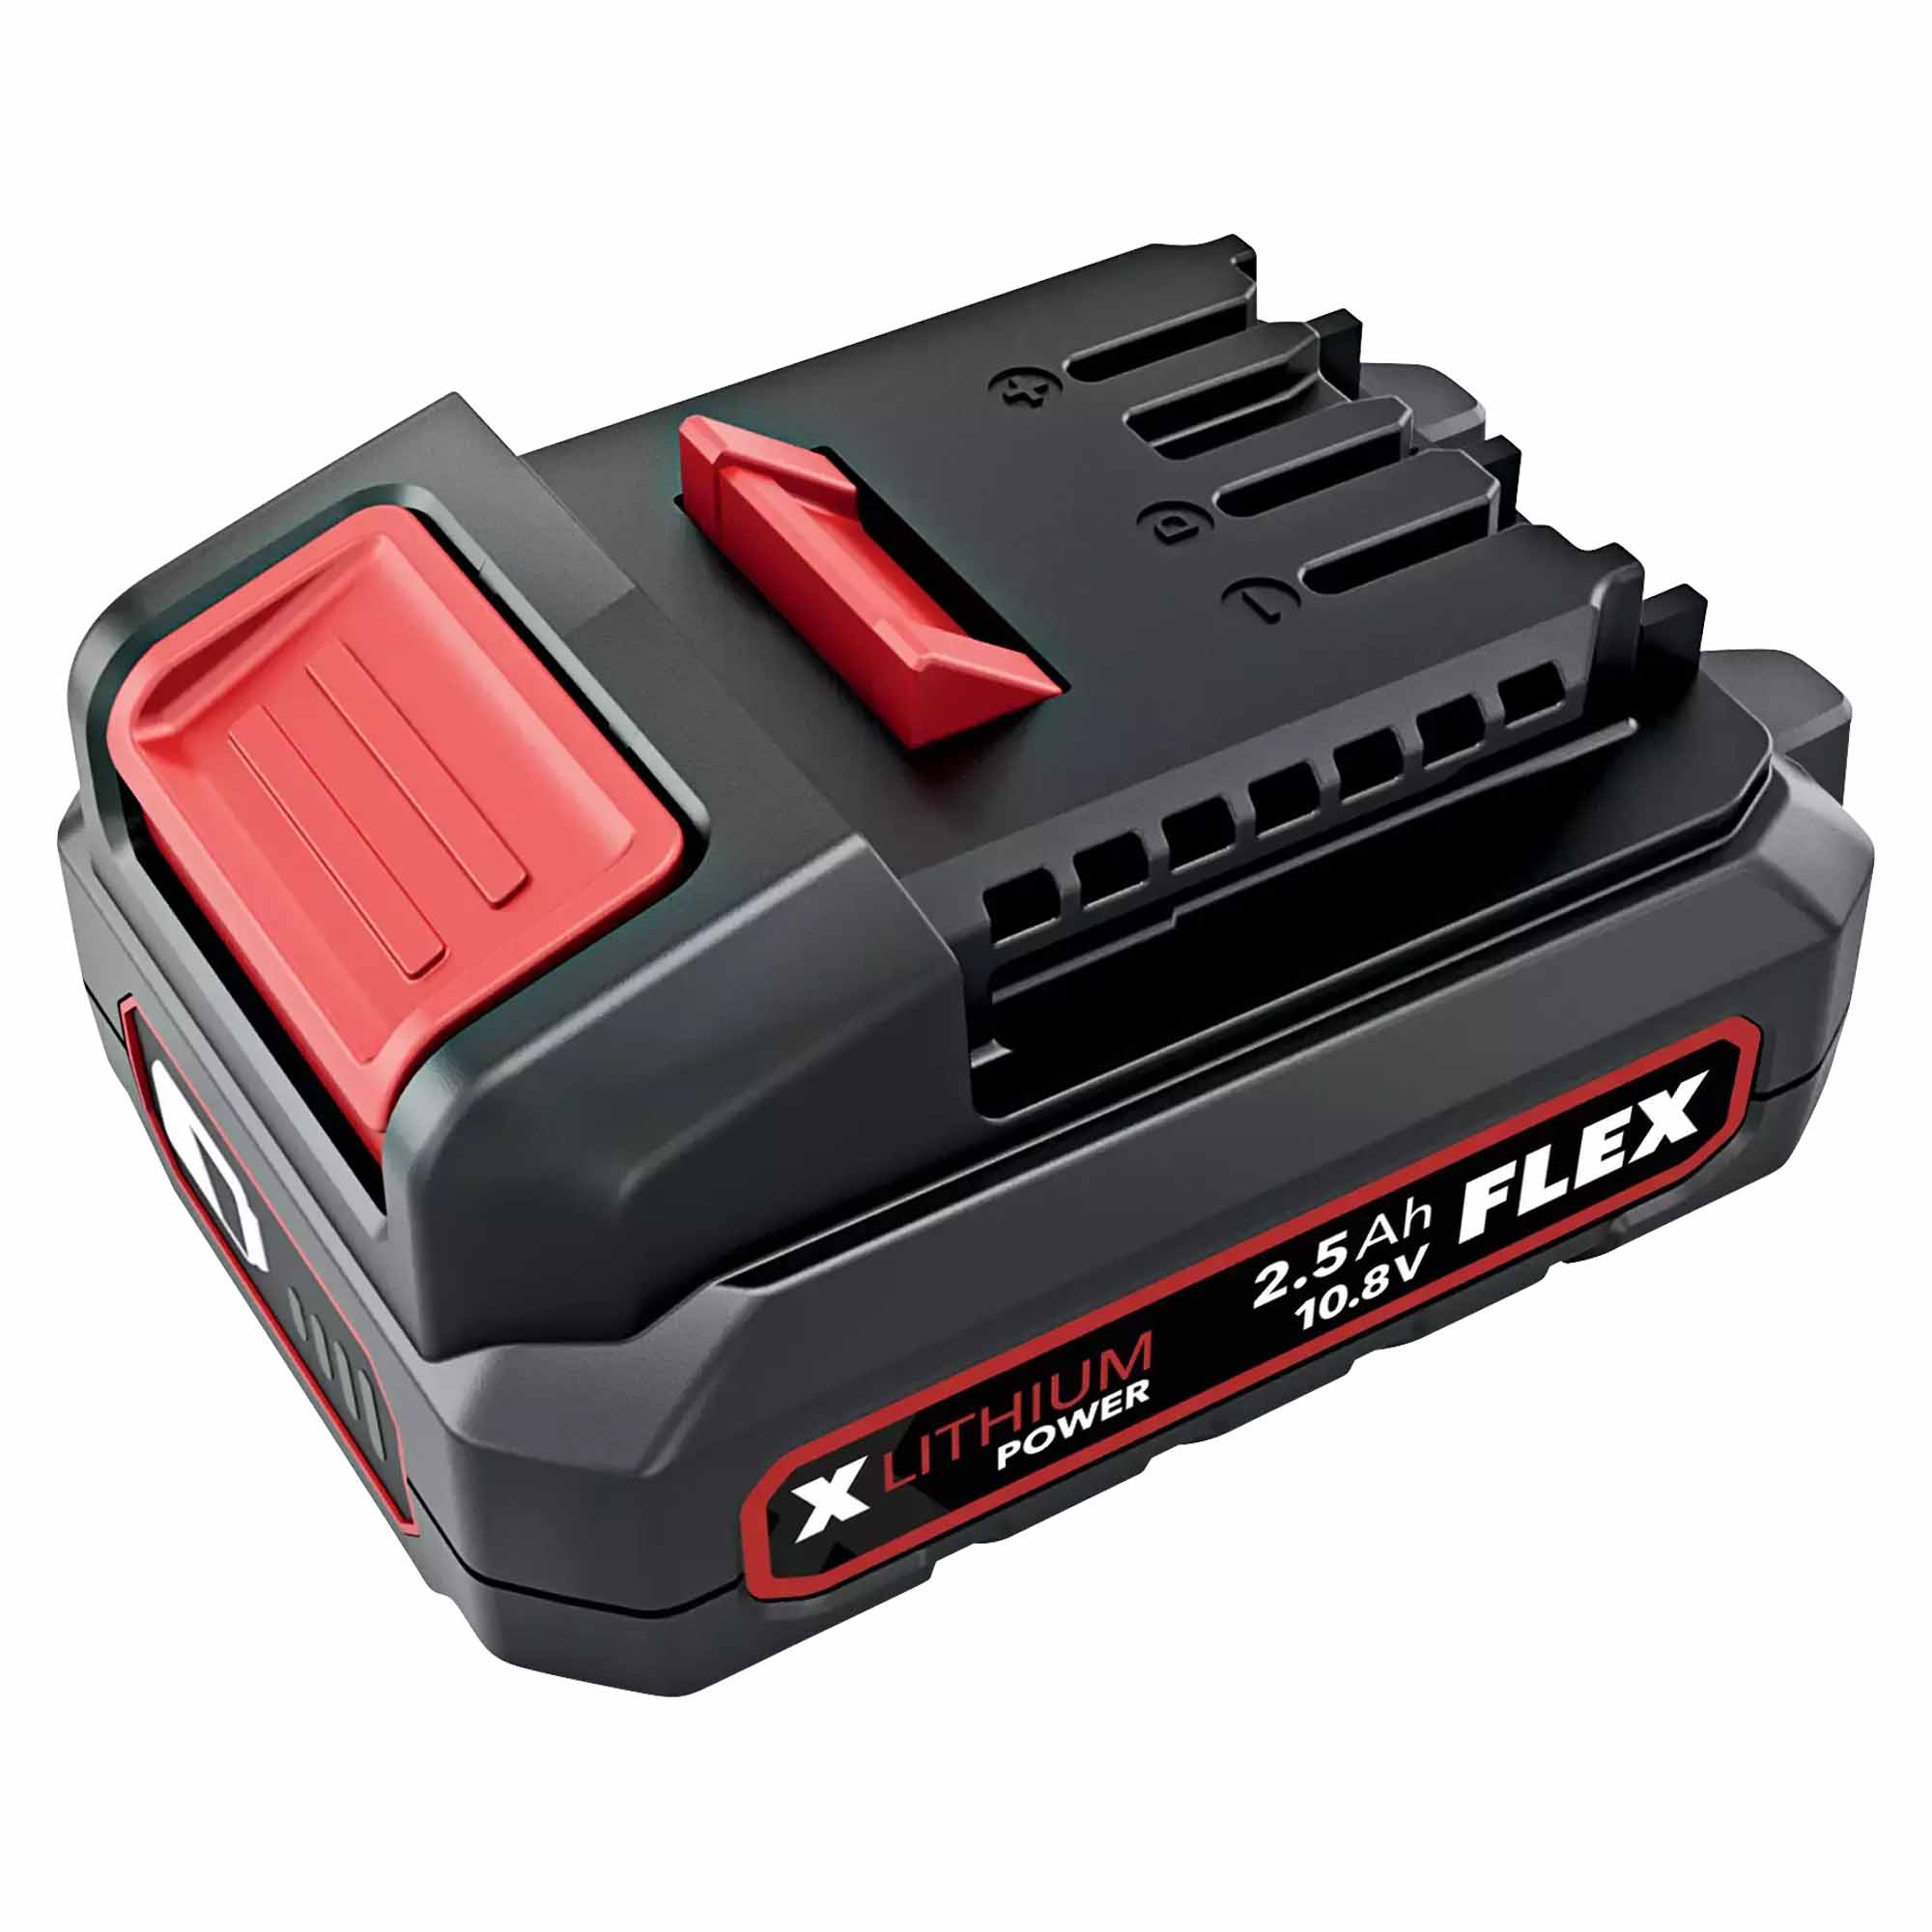 Batterie Flex CL AP 10.8/2.5 Ah